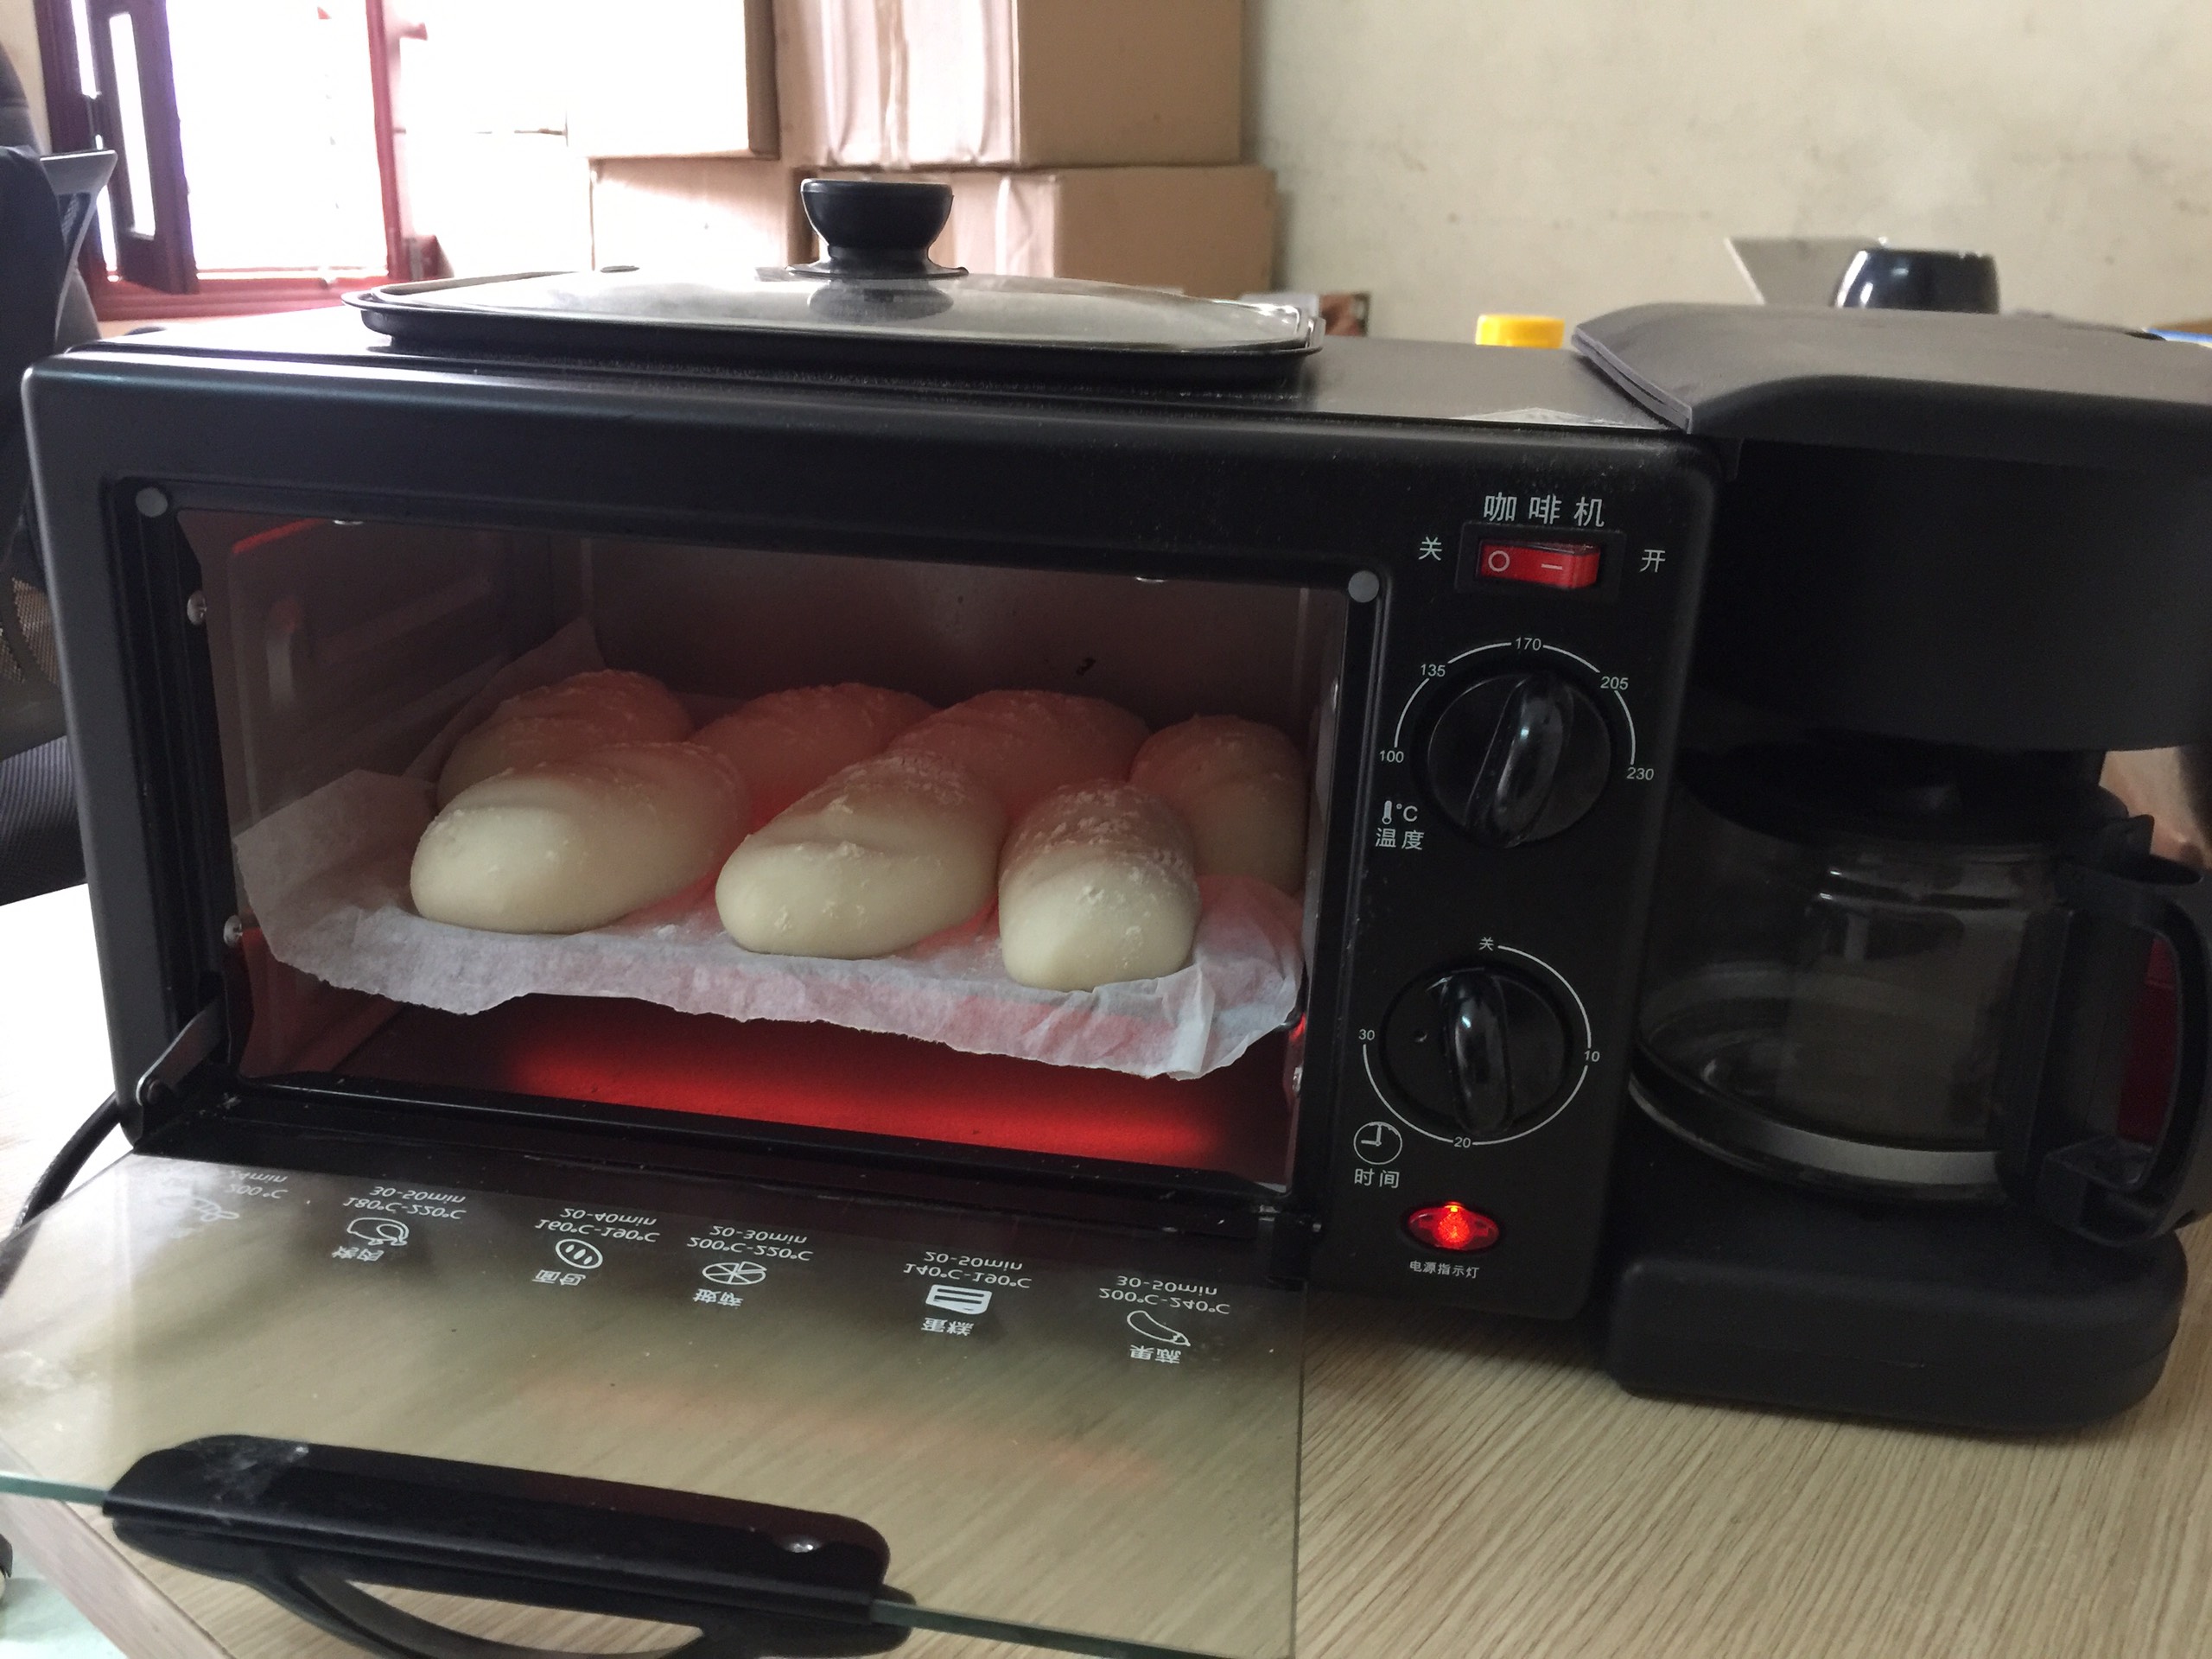 Mùa dịch Covid-19: Cuối tuần ở nhà làm bánh mì thơm ngon, nóng giòn đặc ruột 